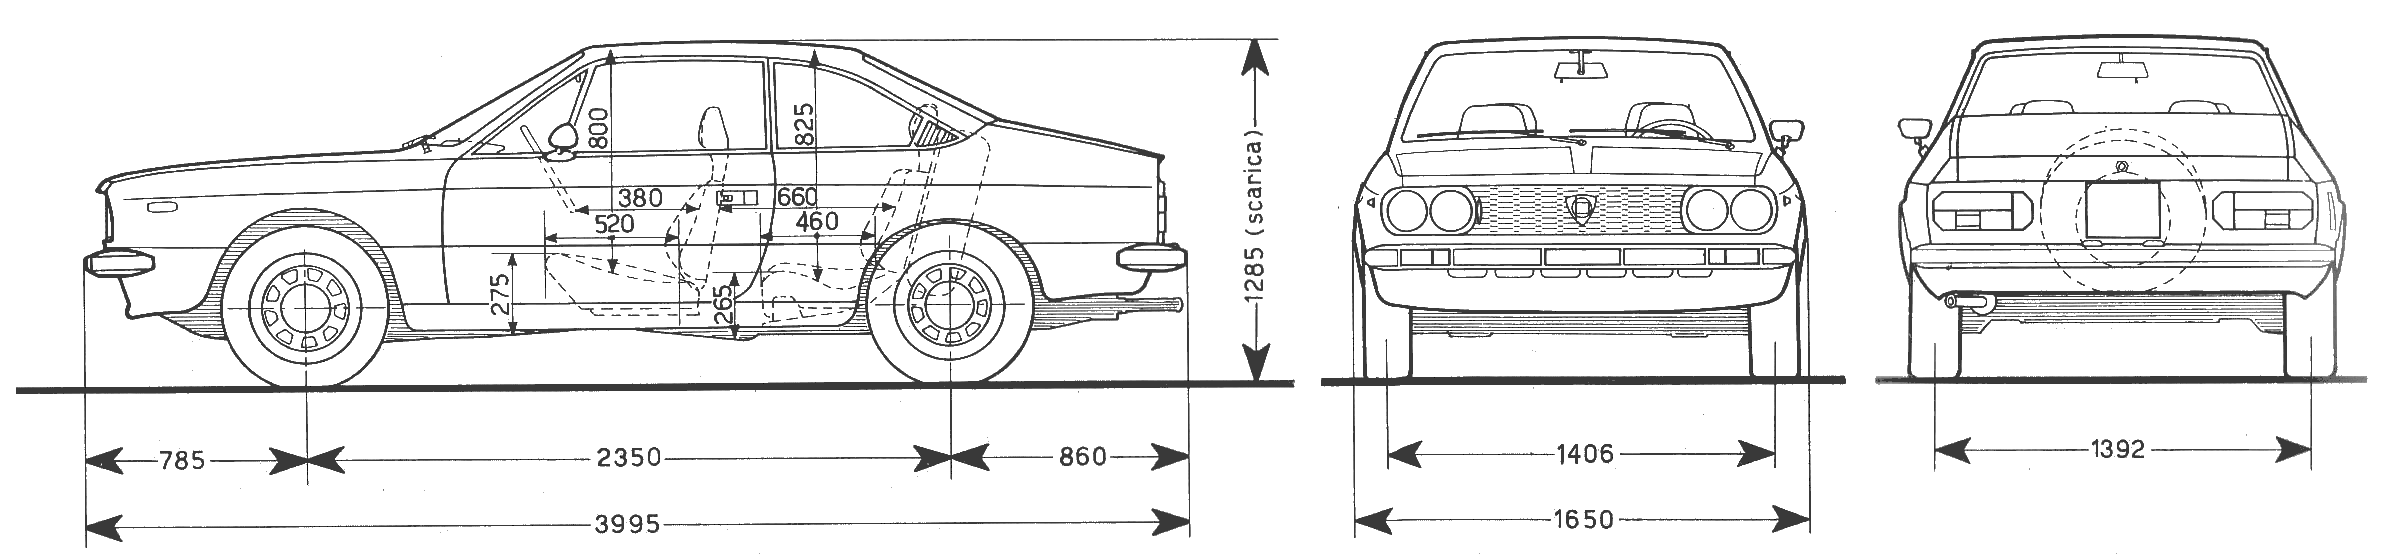 Lancia Beta blueprint